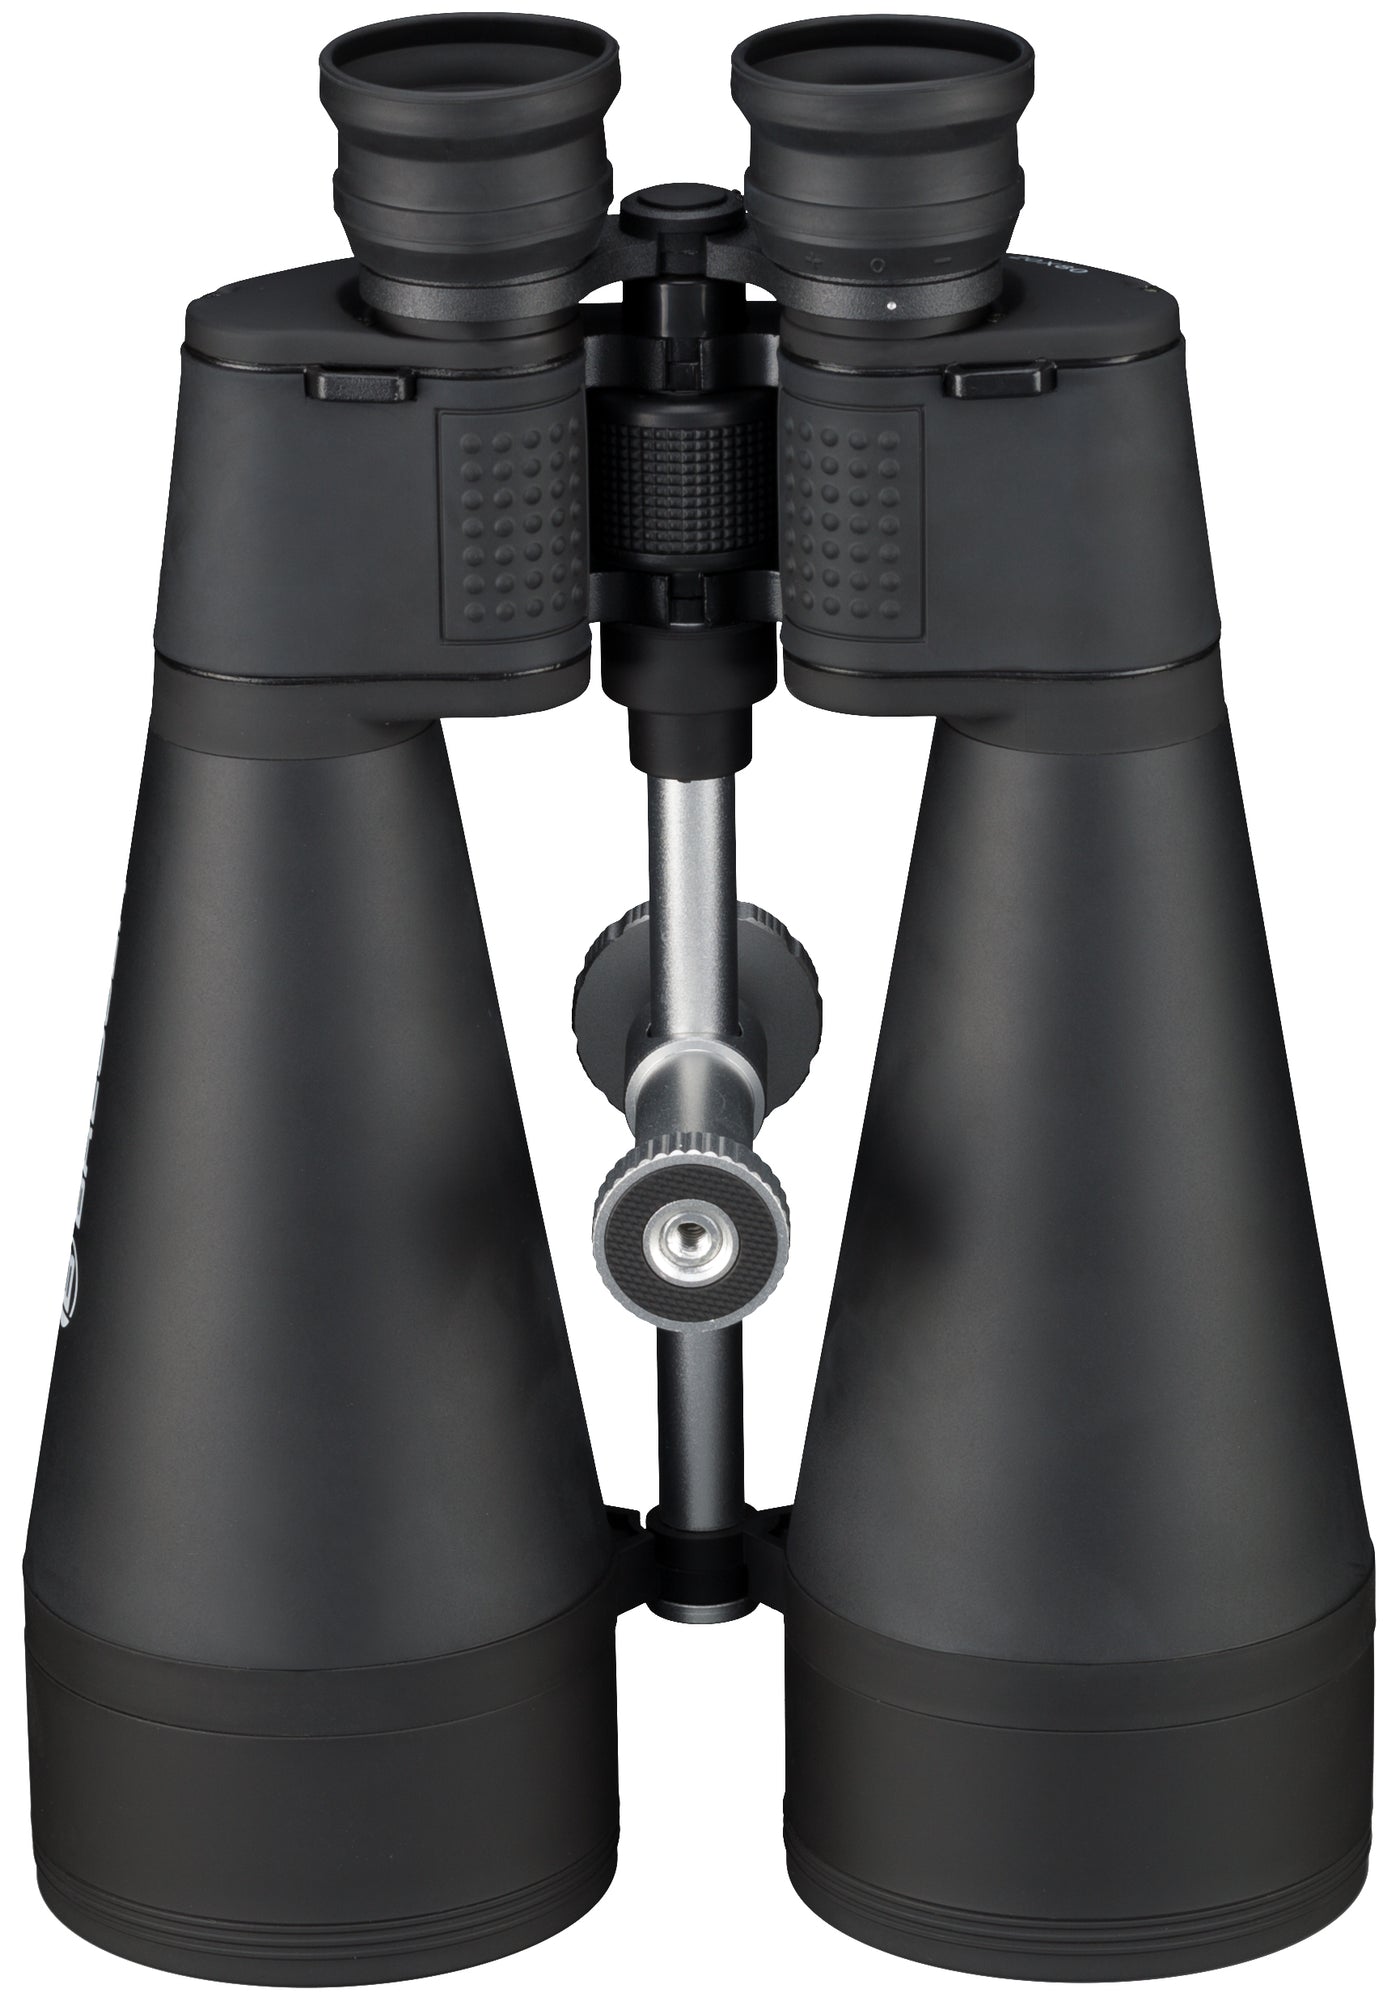 Bresser Spezial-Astro Binoculars - 20 x 80